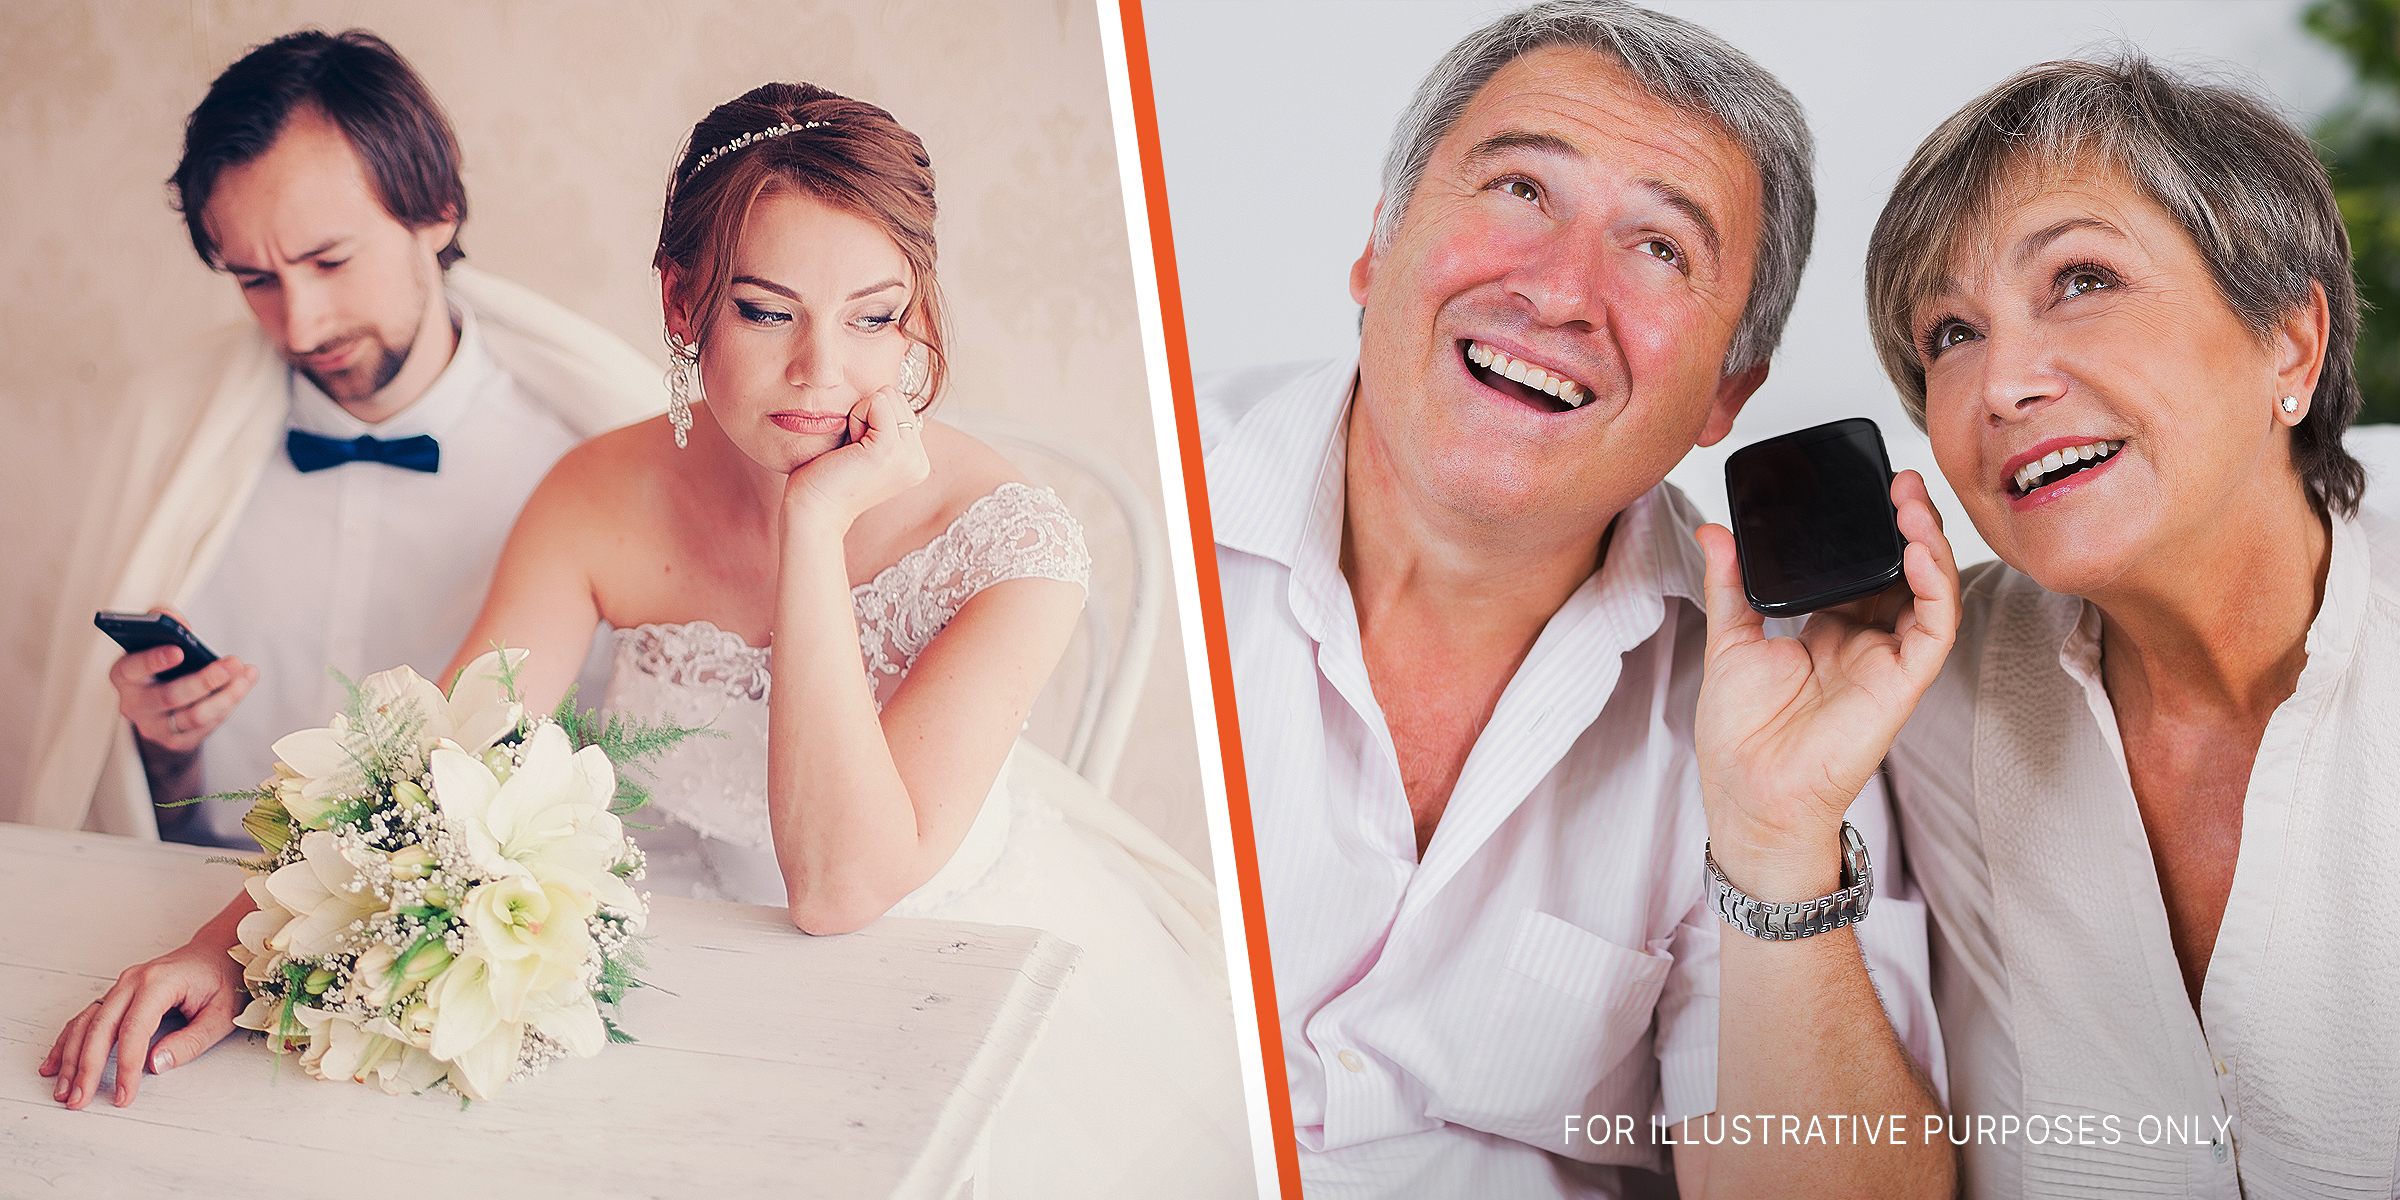 Ein Bräutigam, der auf sein Telefon schaut, während seine Braut enttäuscht guckt | Ein älteres Unternehmen, das lächelt, während es eine Sprachnachricht hinterlässt | Quelle: Shutterstock